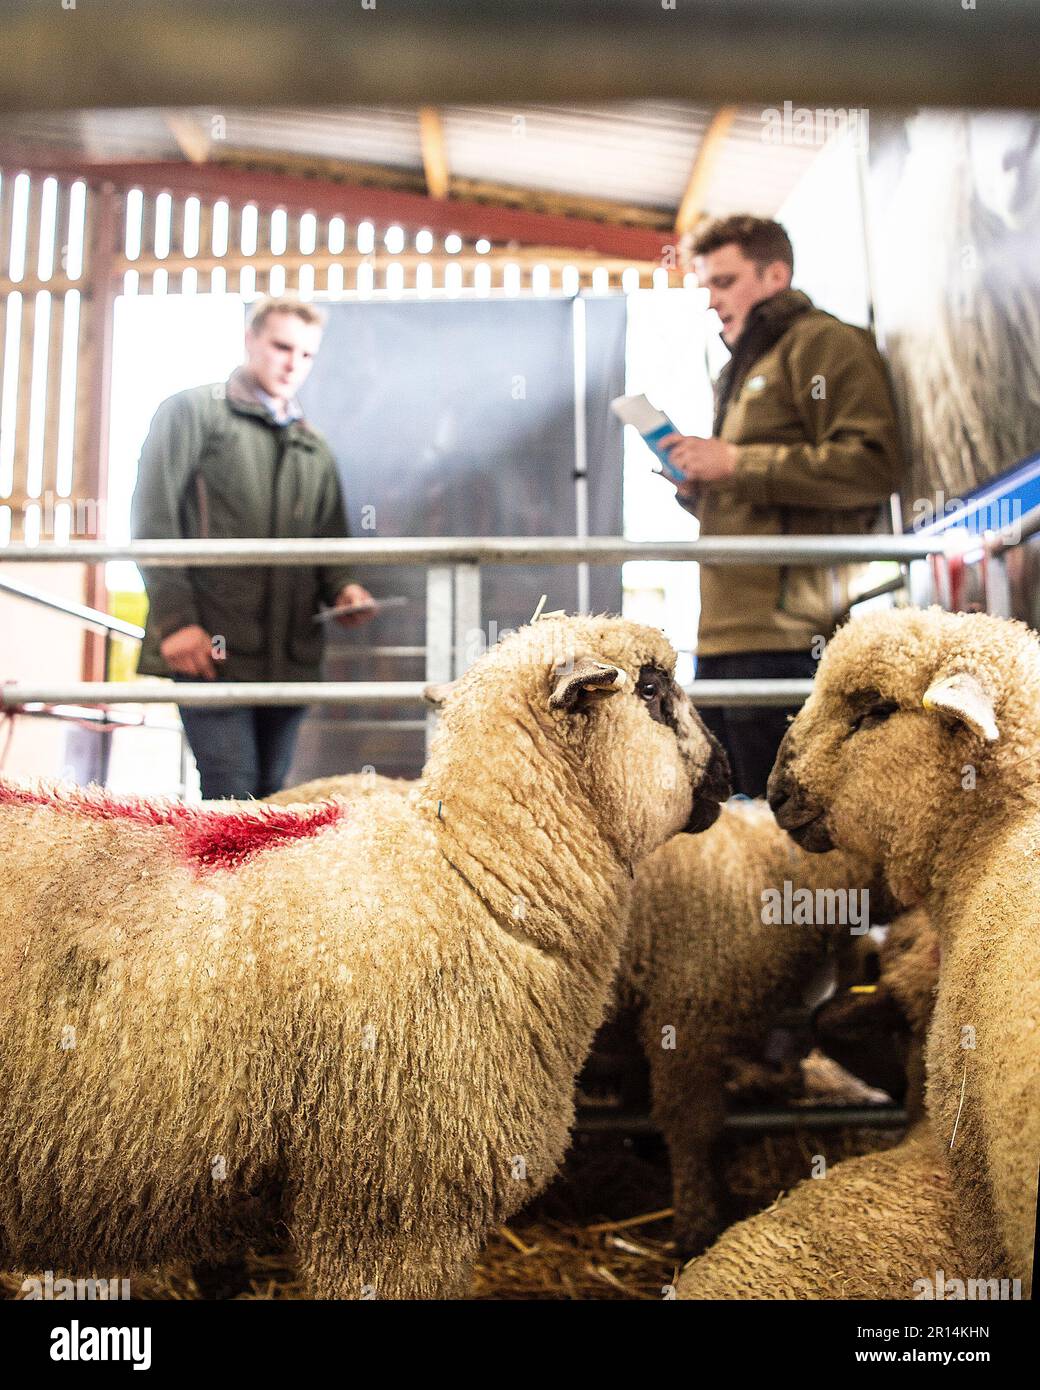 sheep at a sheep show Stock Photo